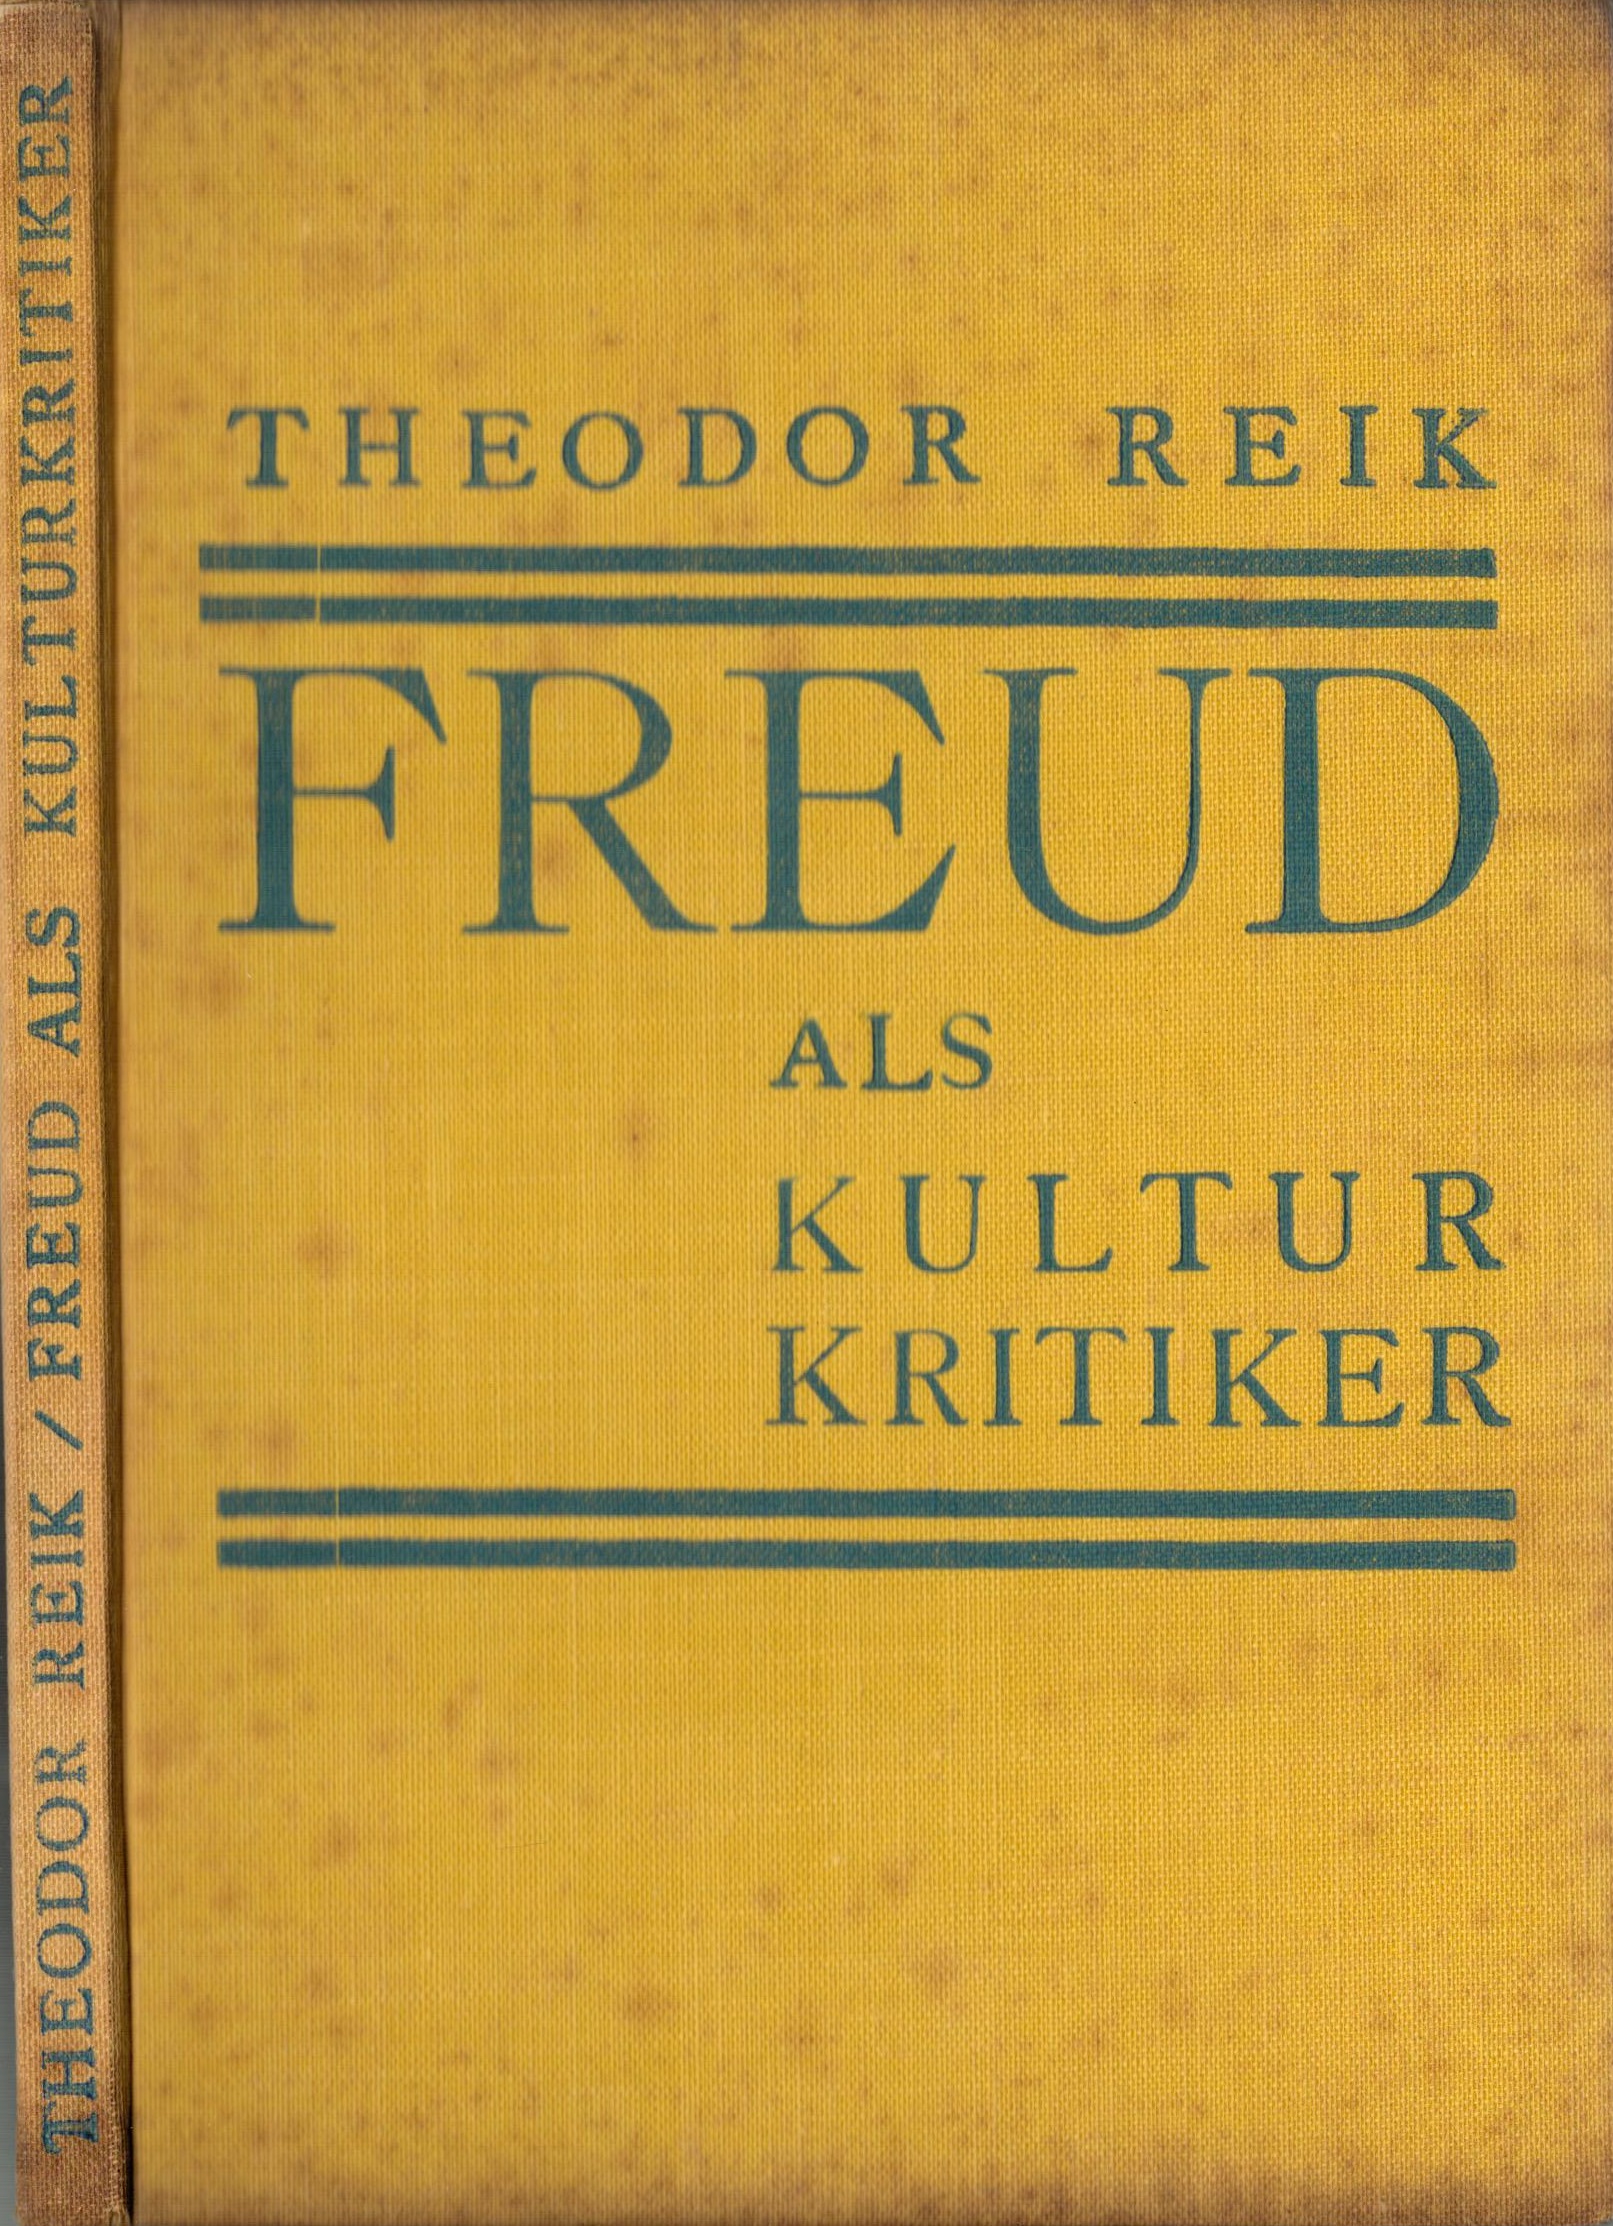 Freud als Kulturkritiker - vorderer Buchdeckel